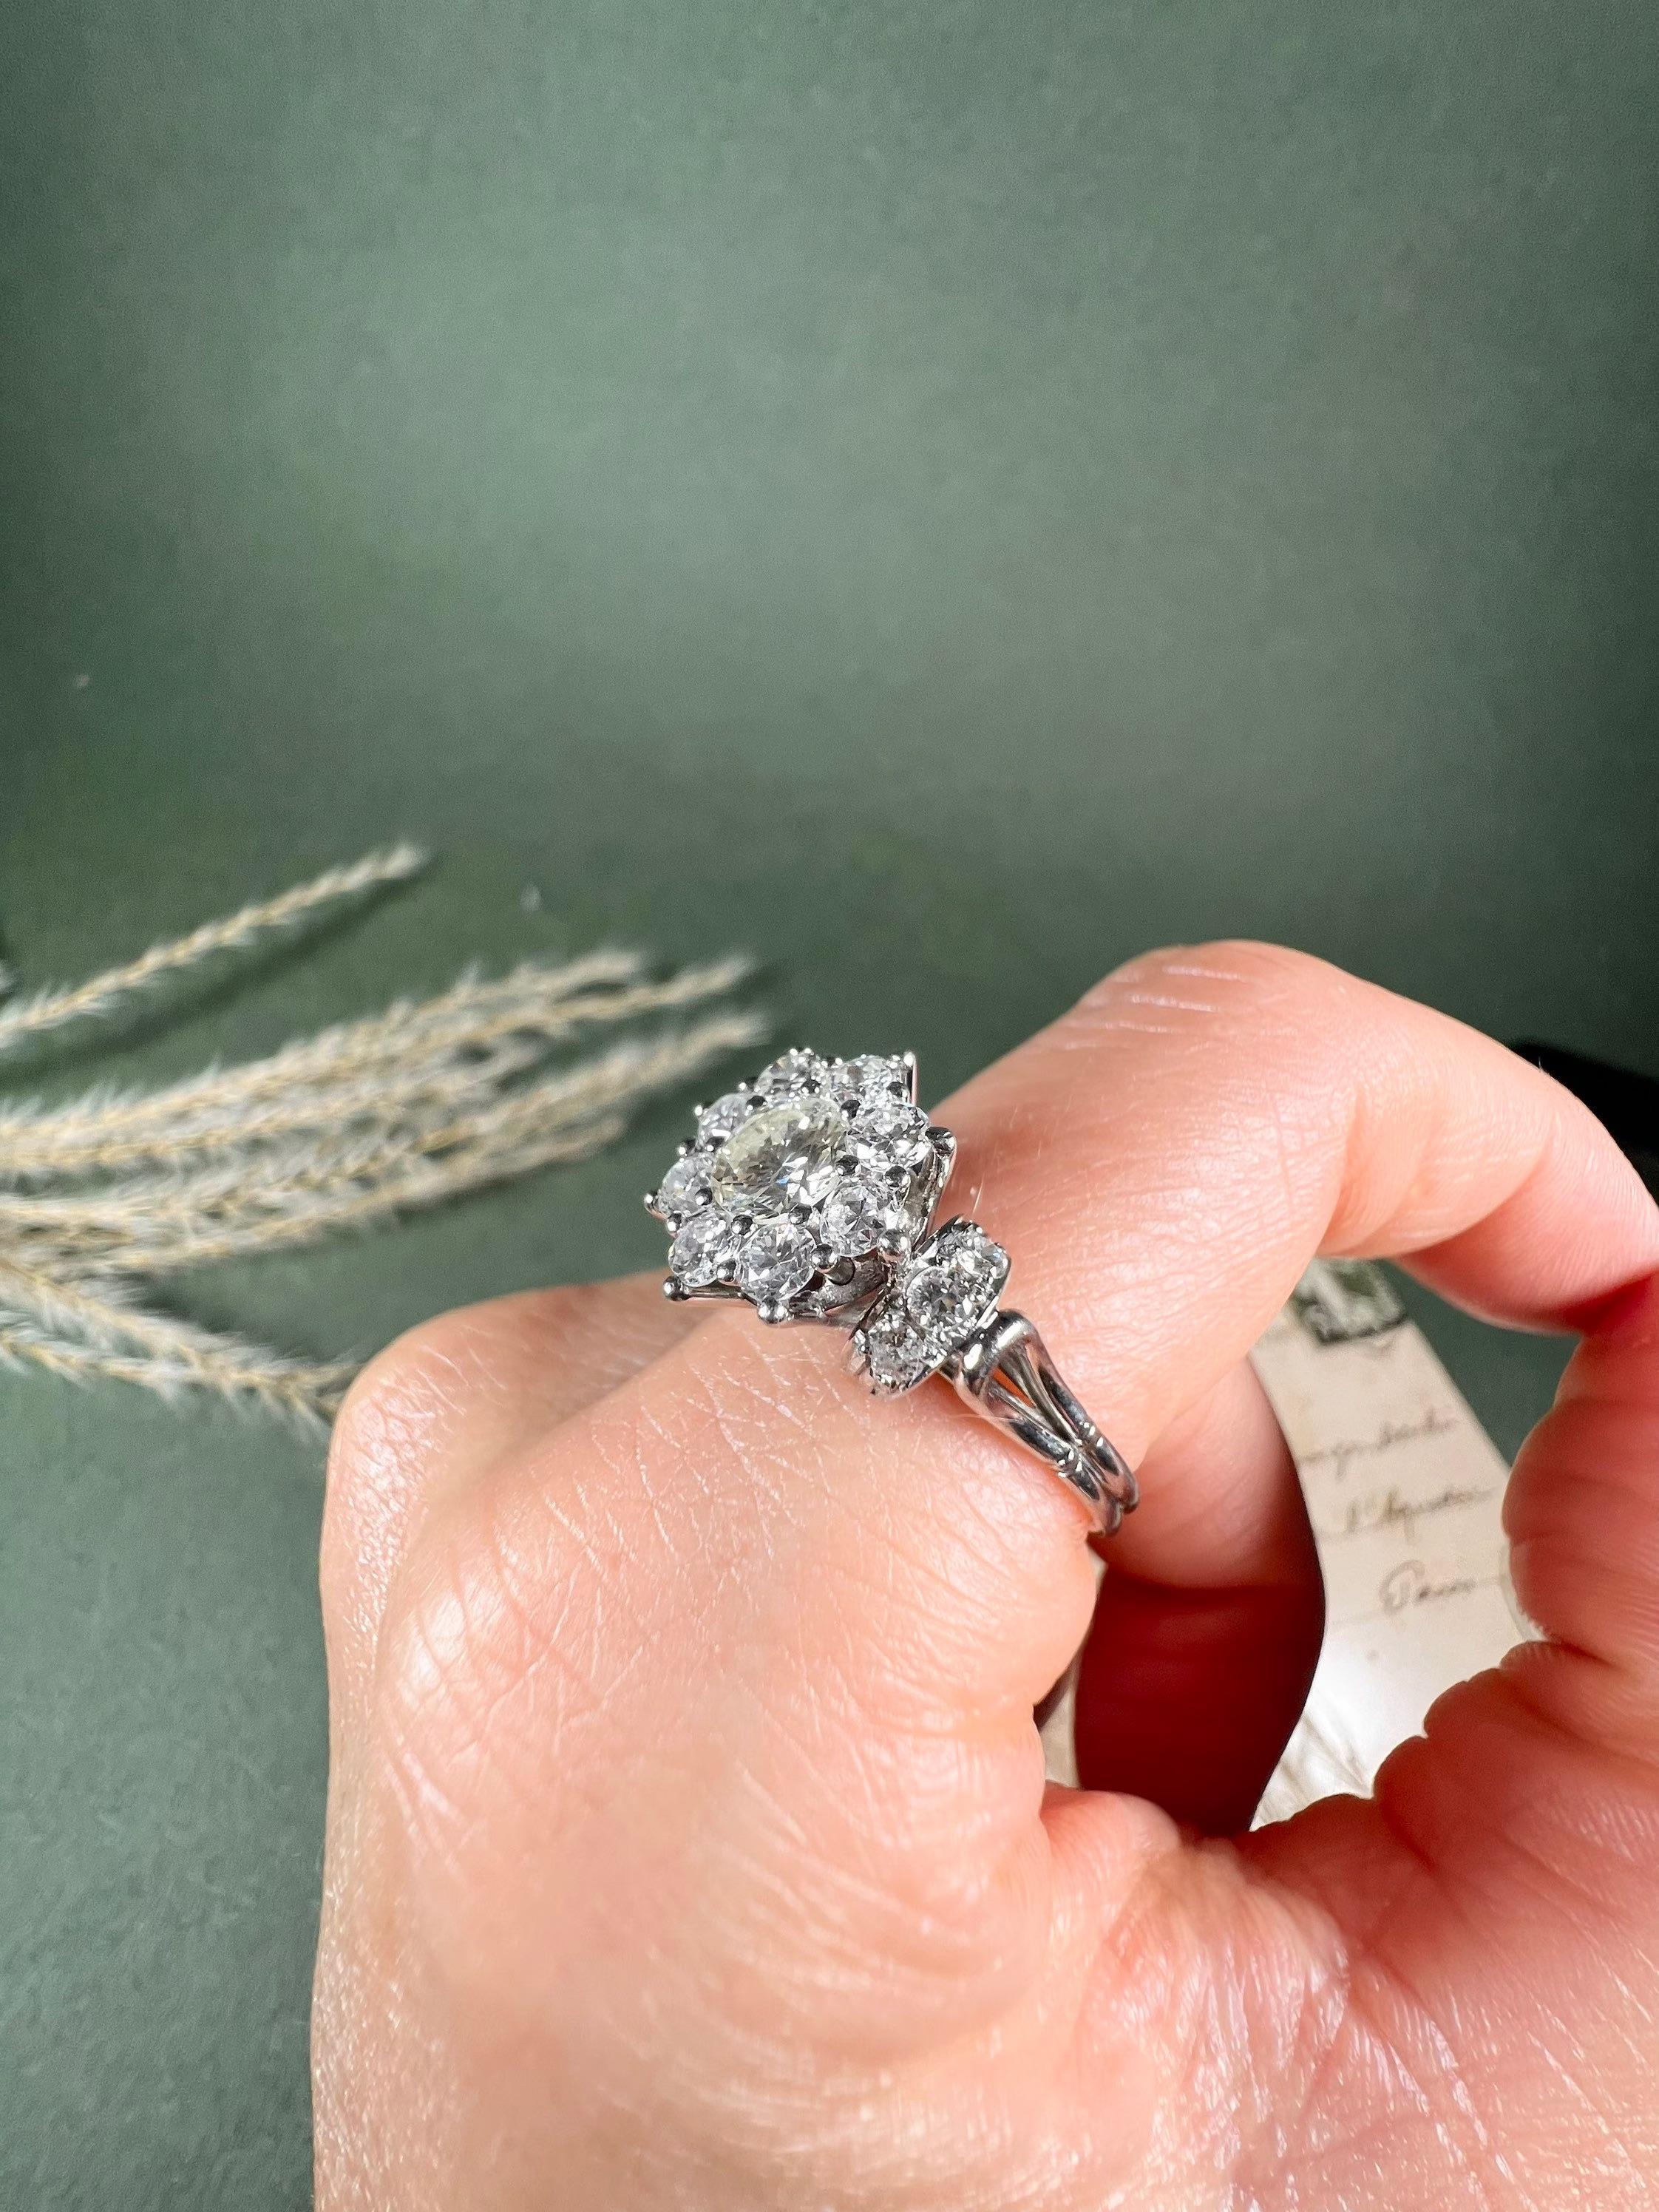 Vintage Diamond Ring 

Platin 

CIRCA 1980er Jahre

Fabelhaft großer Diamantring im Vintage-Stil. Mit einem wunderschönen Cluster aus modernen Diamanten im Brillantschliff und hübschen Diamantschultern besetzt. Alle Natursteine sind auf einem